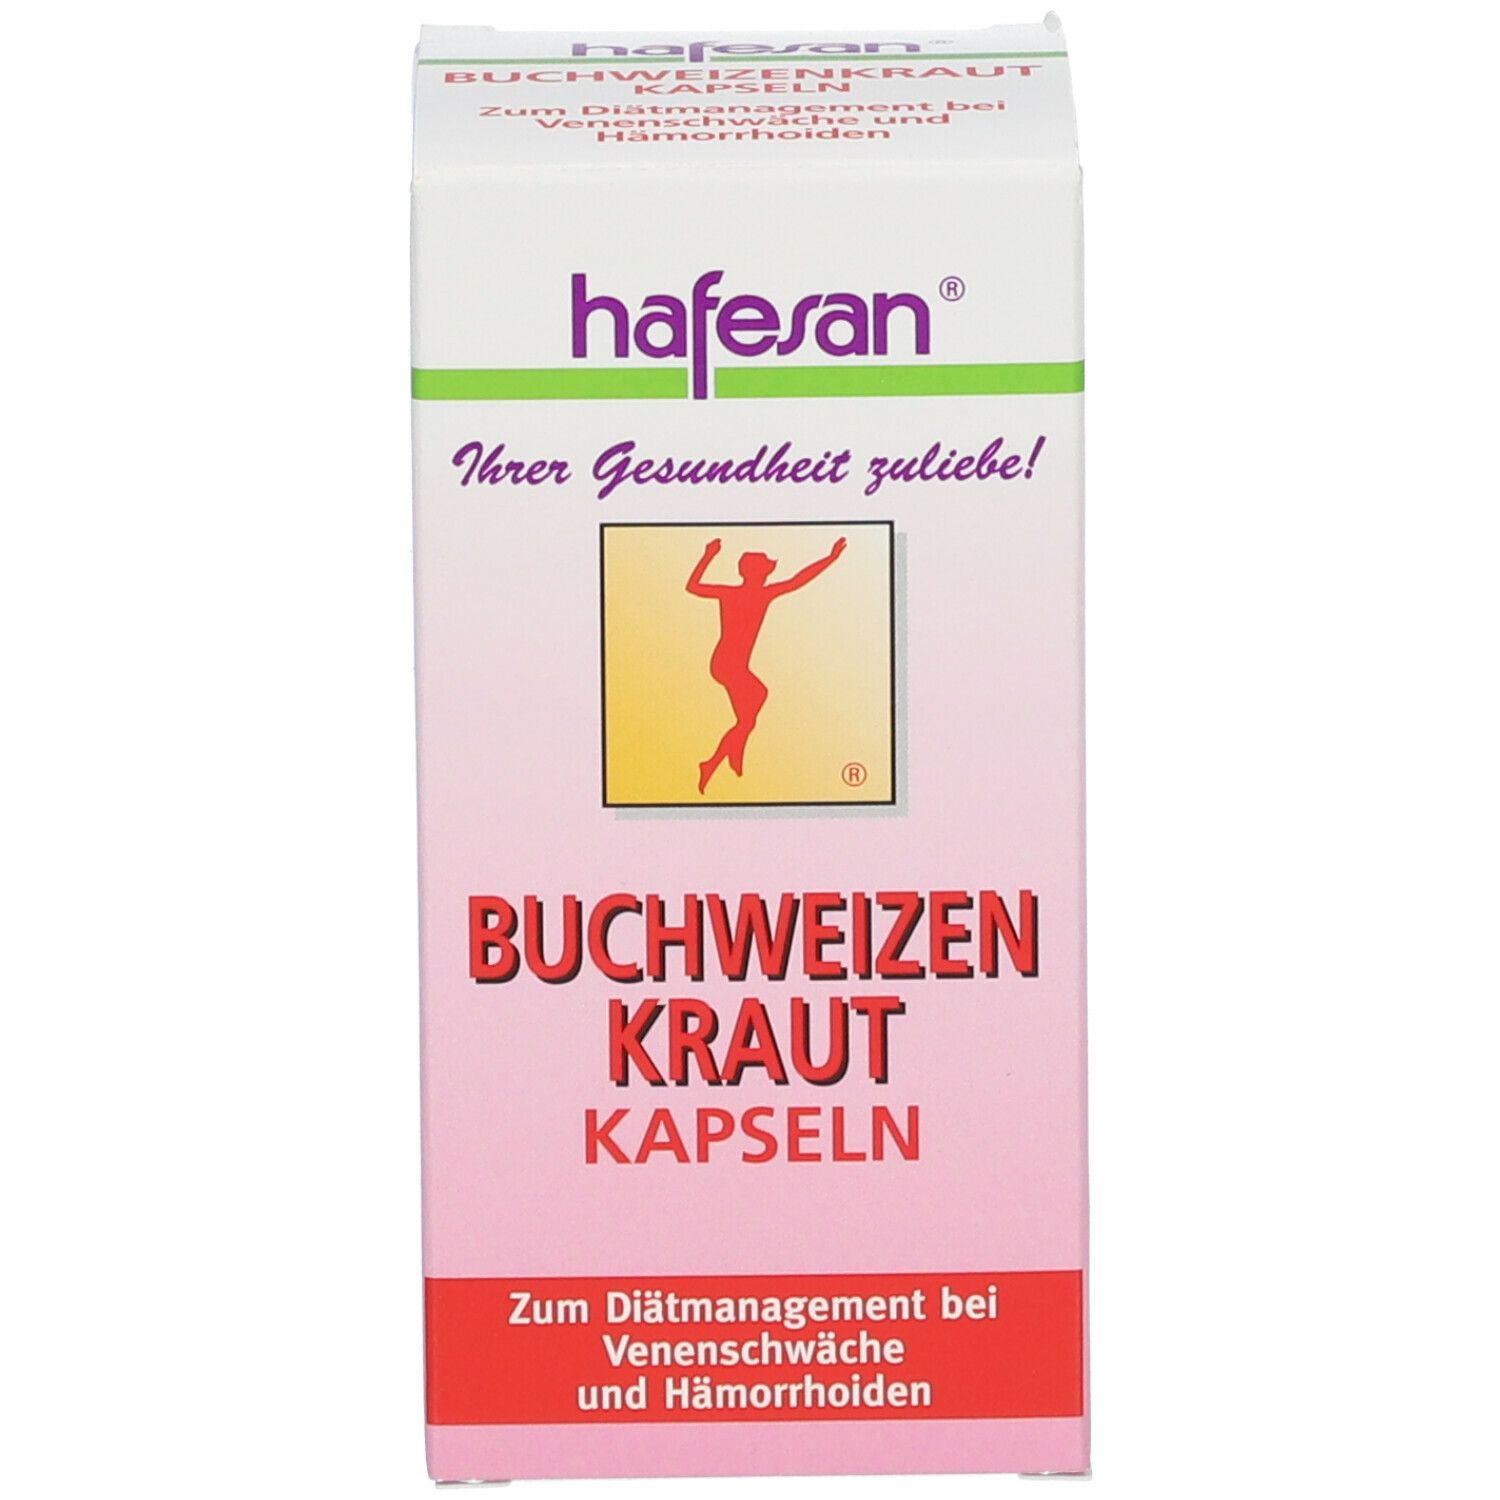 hafesan® Buchweizen Kraut